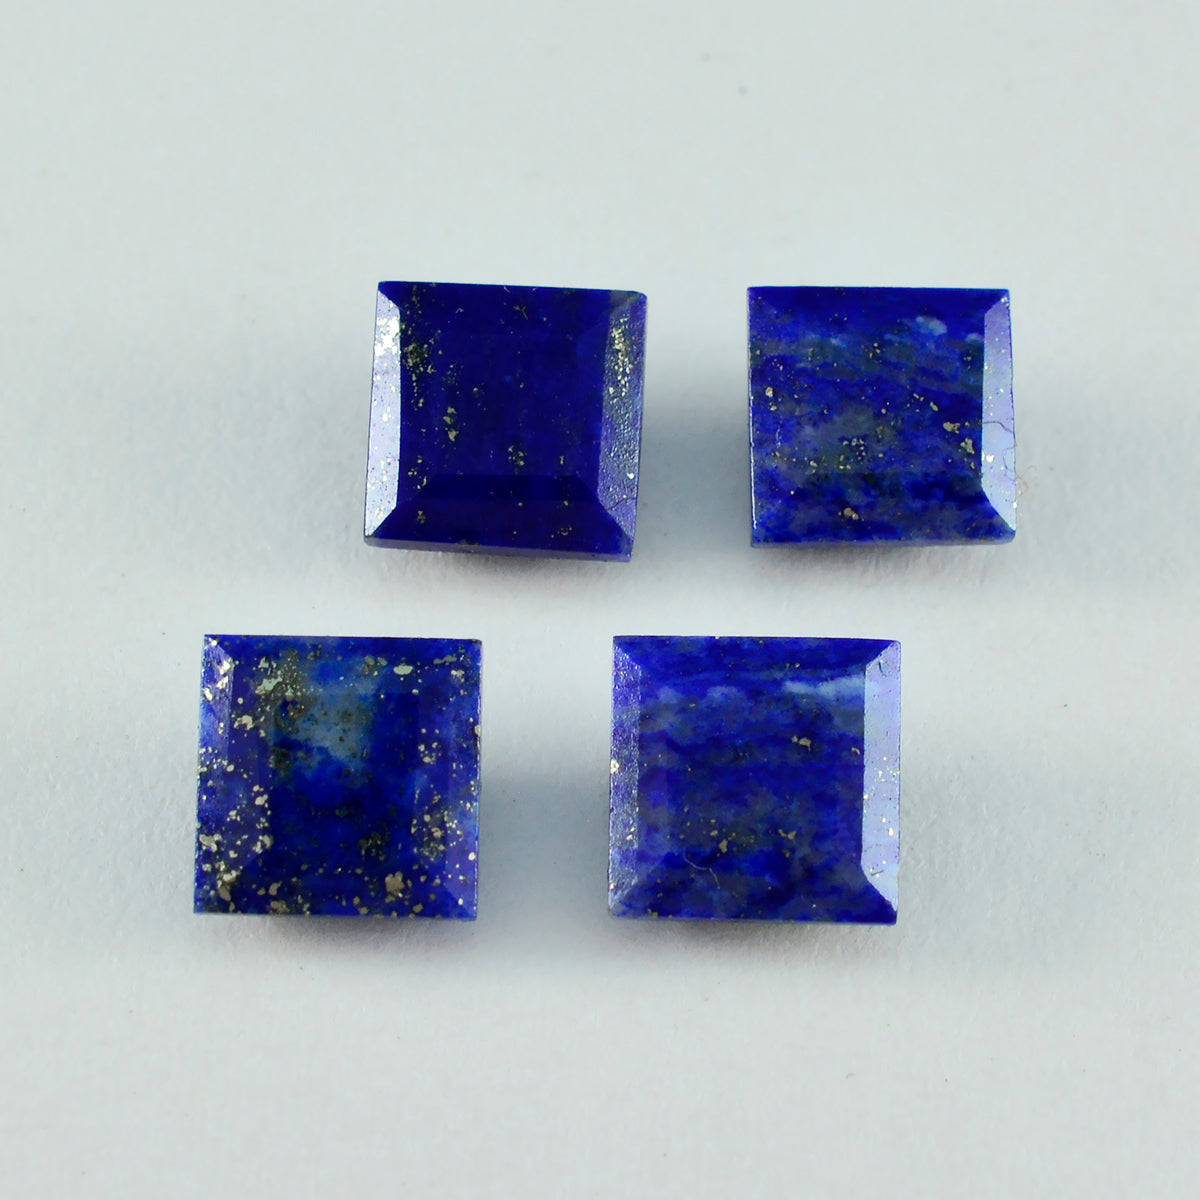 Riyogems 1 Stück echter blauer Lapislazuli, facettiert, 9 x 9 mm, quadratische Form, Edelstein von erstaunlicher Qualität